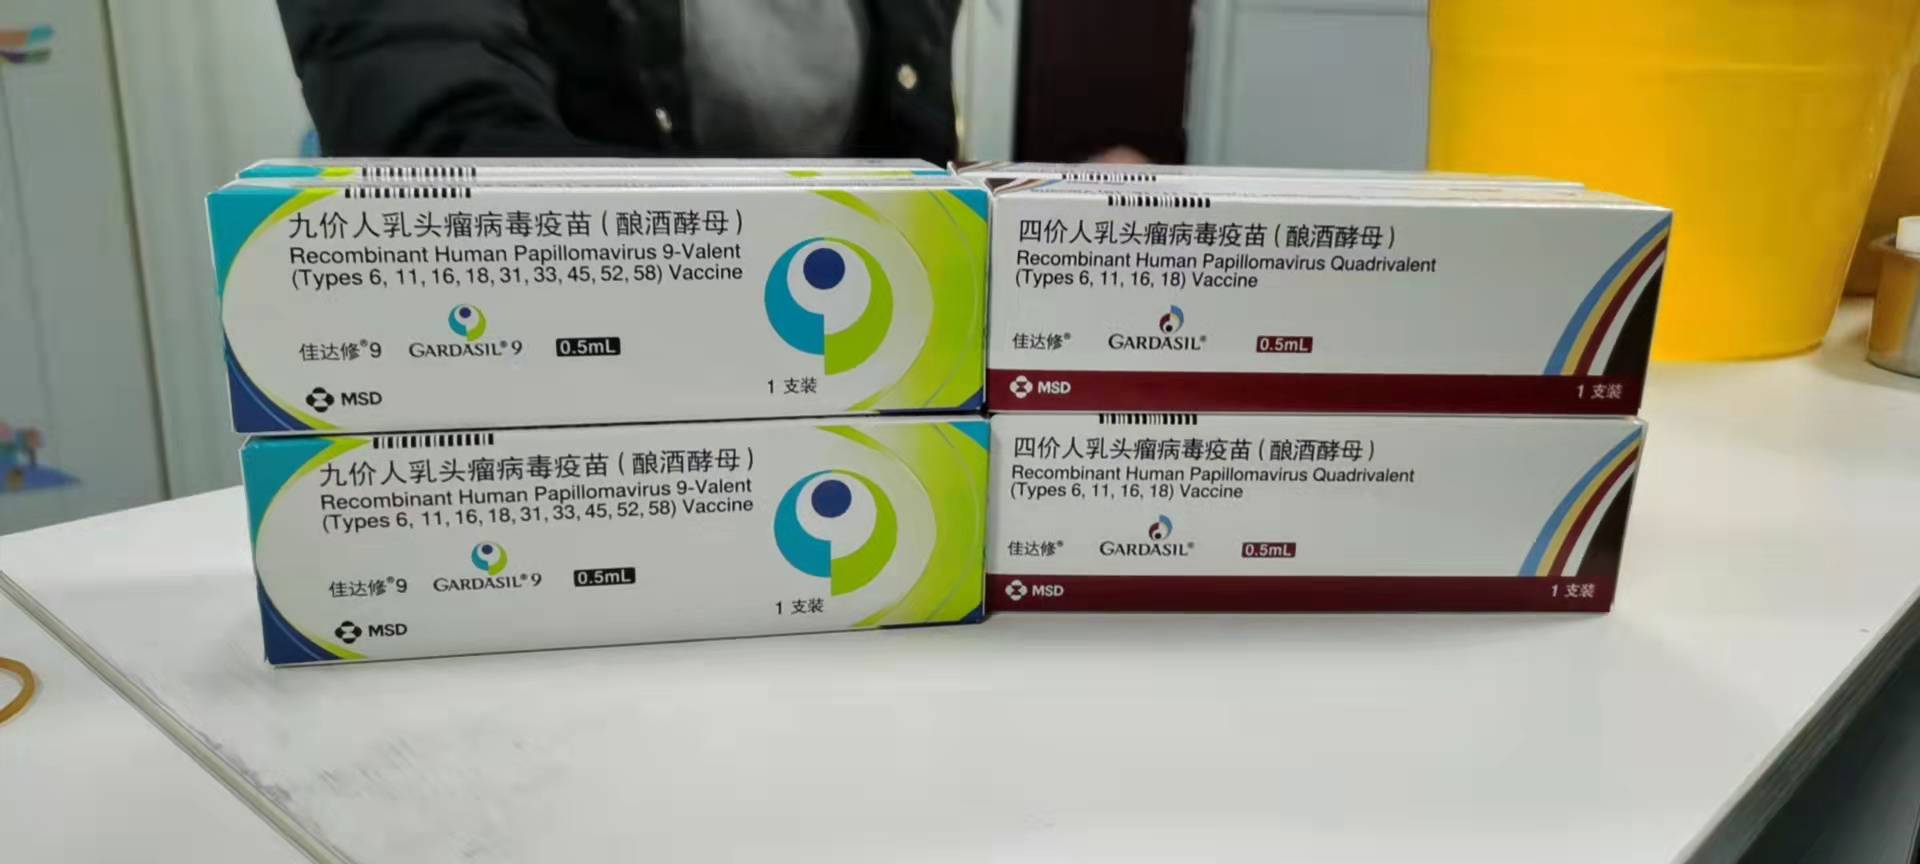 郑州新密市免费试点开展12-14岁女孩HPV疫苗接种 疾控专家提醒及早预防有必要